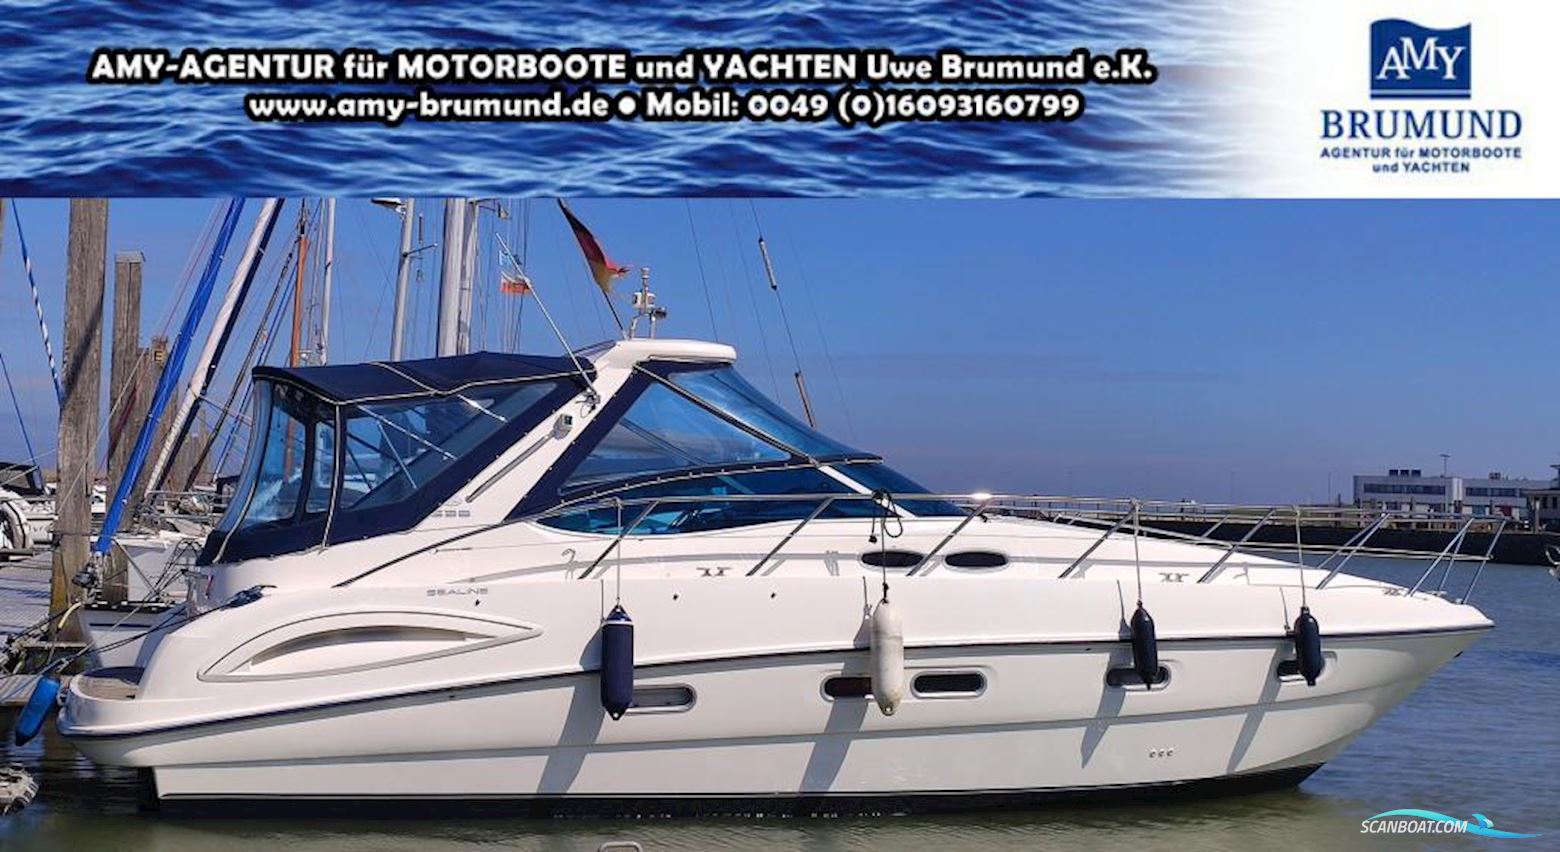 Sealine S 38 - Mit Bugschraube Reduzierter Preis! Motorboot 2004, mit Volvo Penta Kad 300 motor, Deutschland